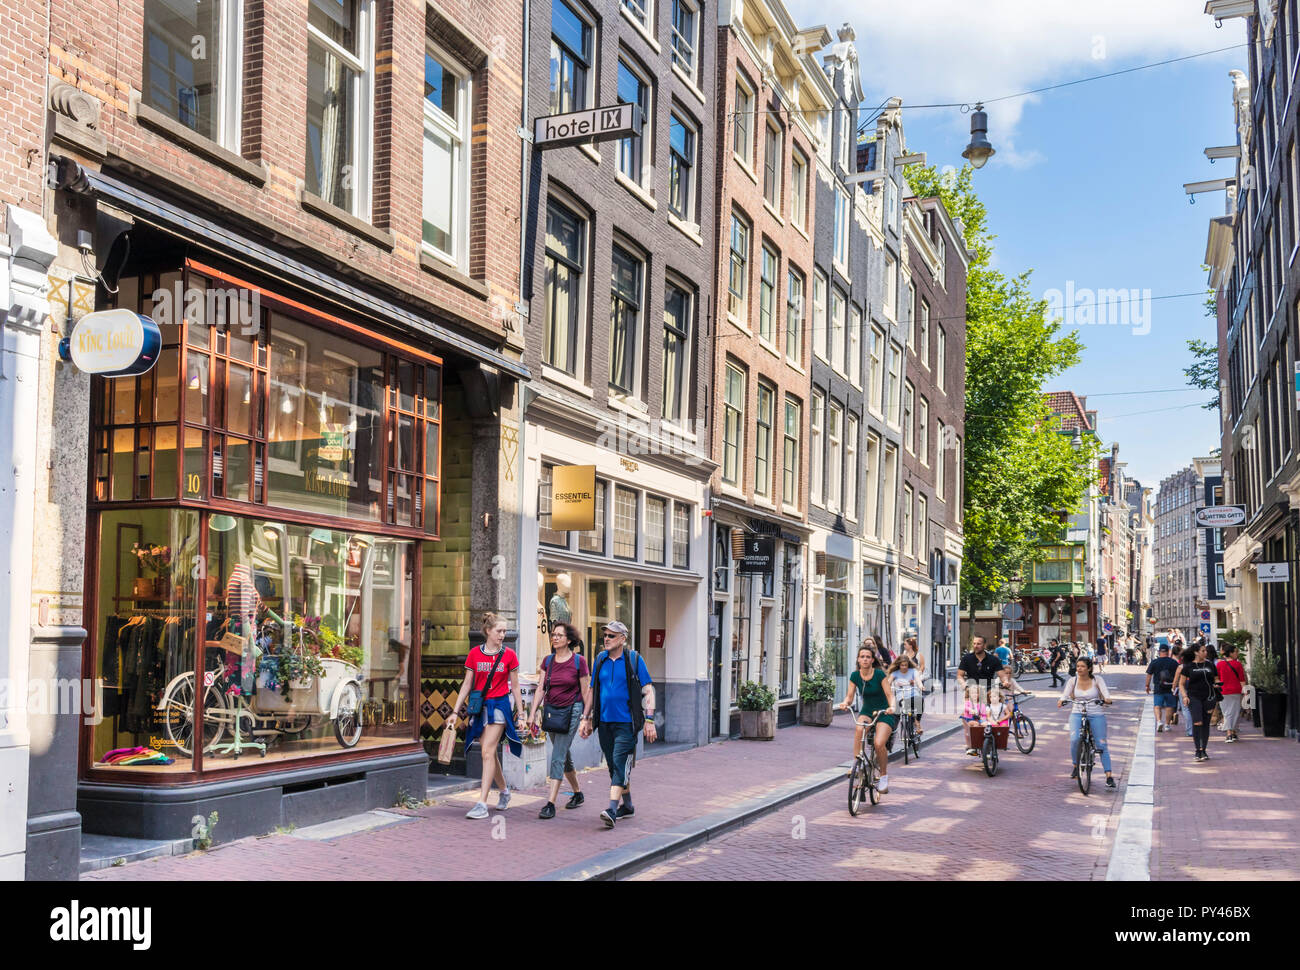 Amsterdam Hartenstraat parte de la moderna zona de nueve calles de moda, tiendas, restaurantes, cafeterías, librerías, tiendas de interiorismo de Amsterdam de la UE Foto de stock